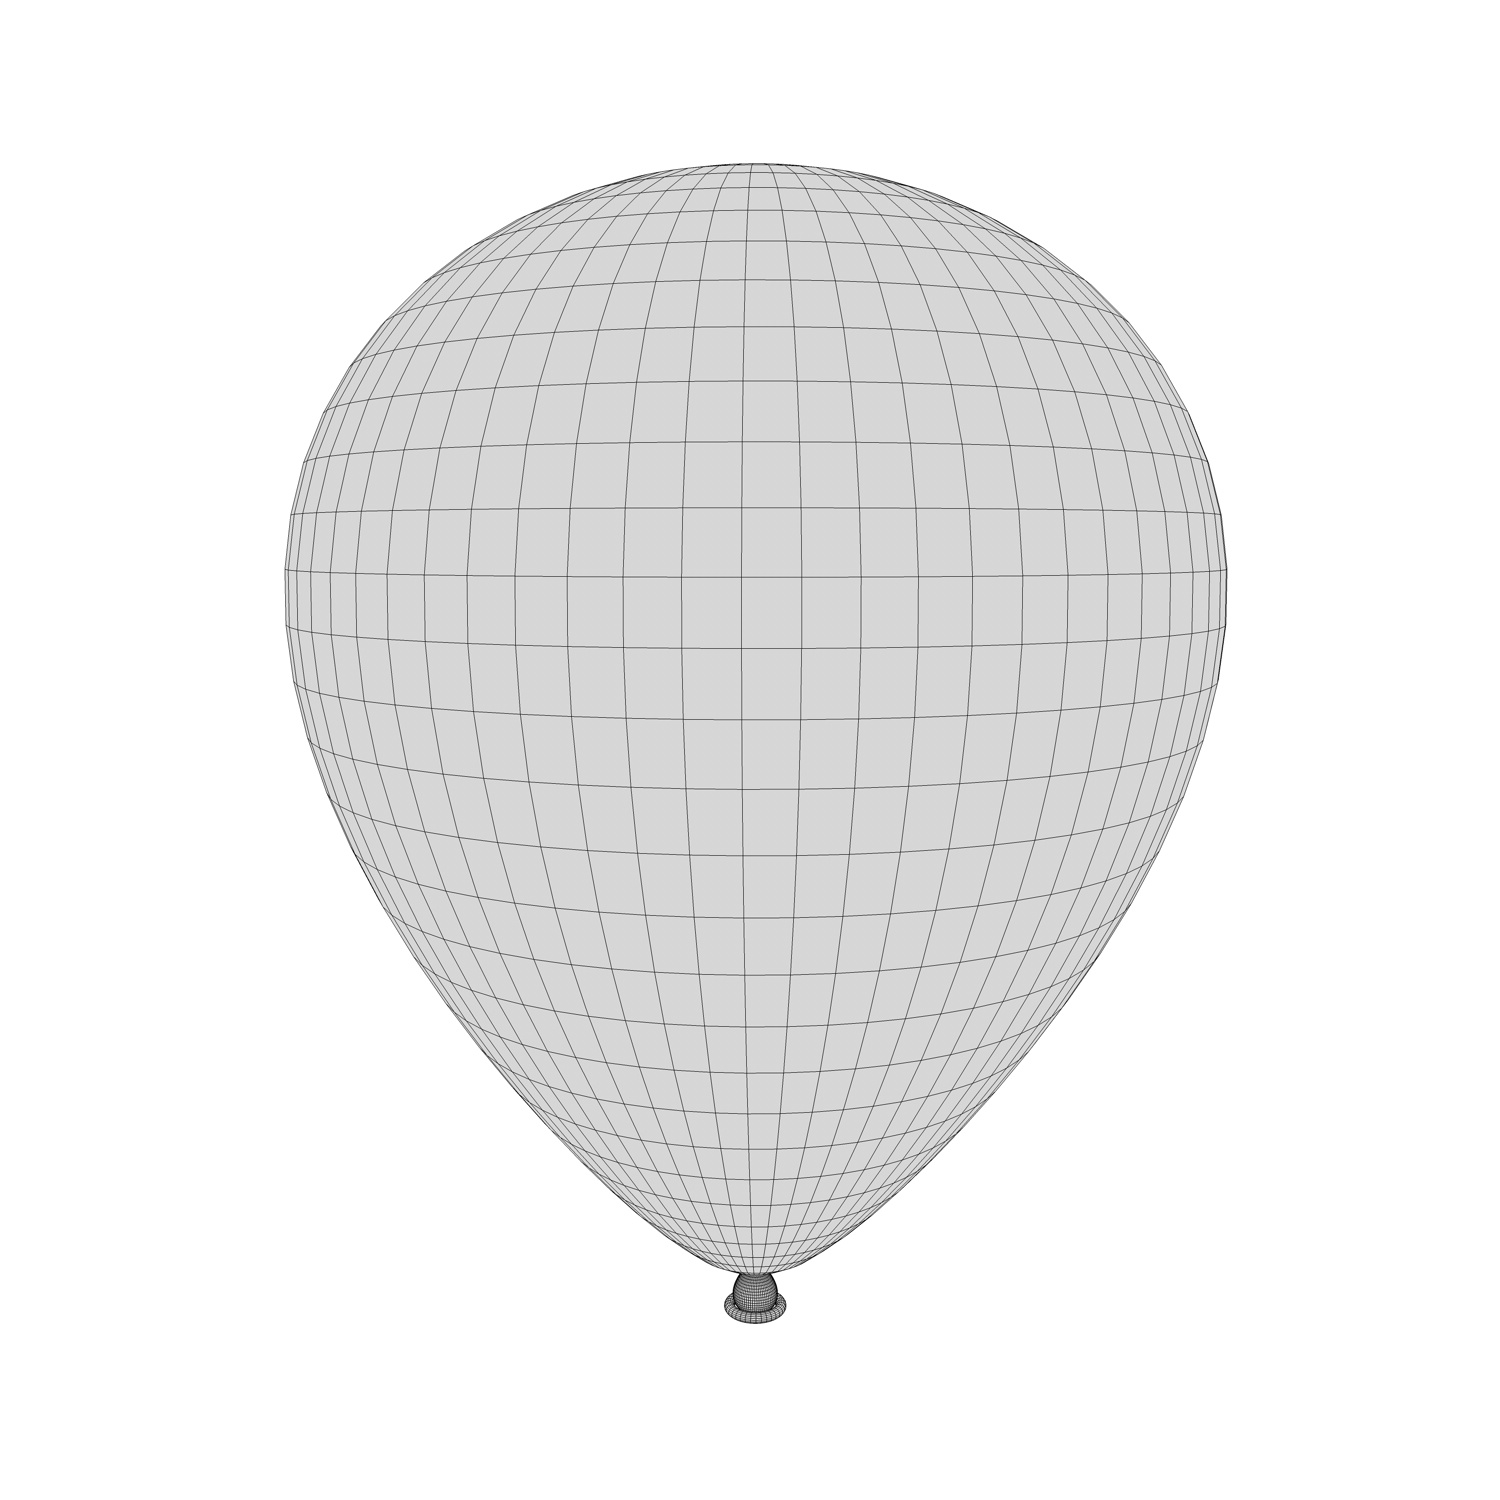 3D-model van de ballon